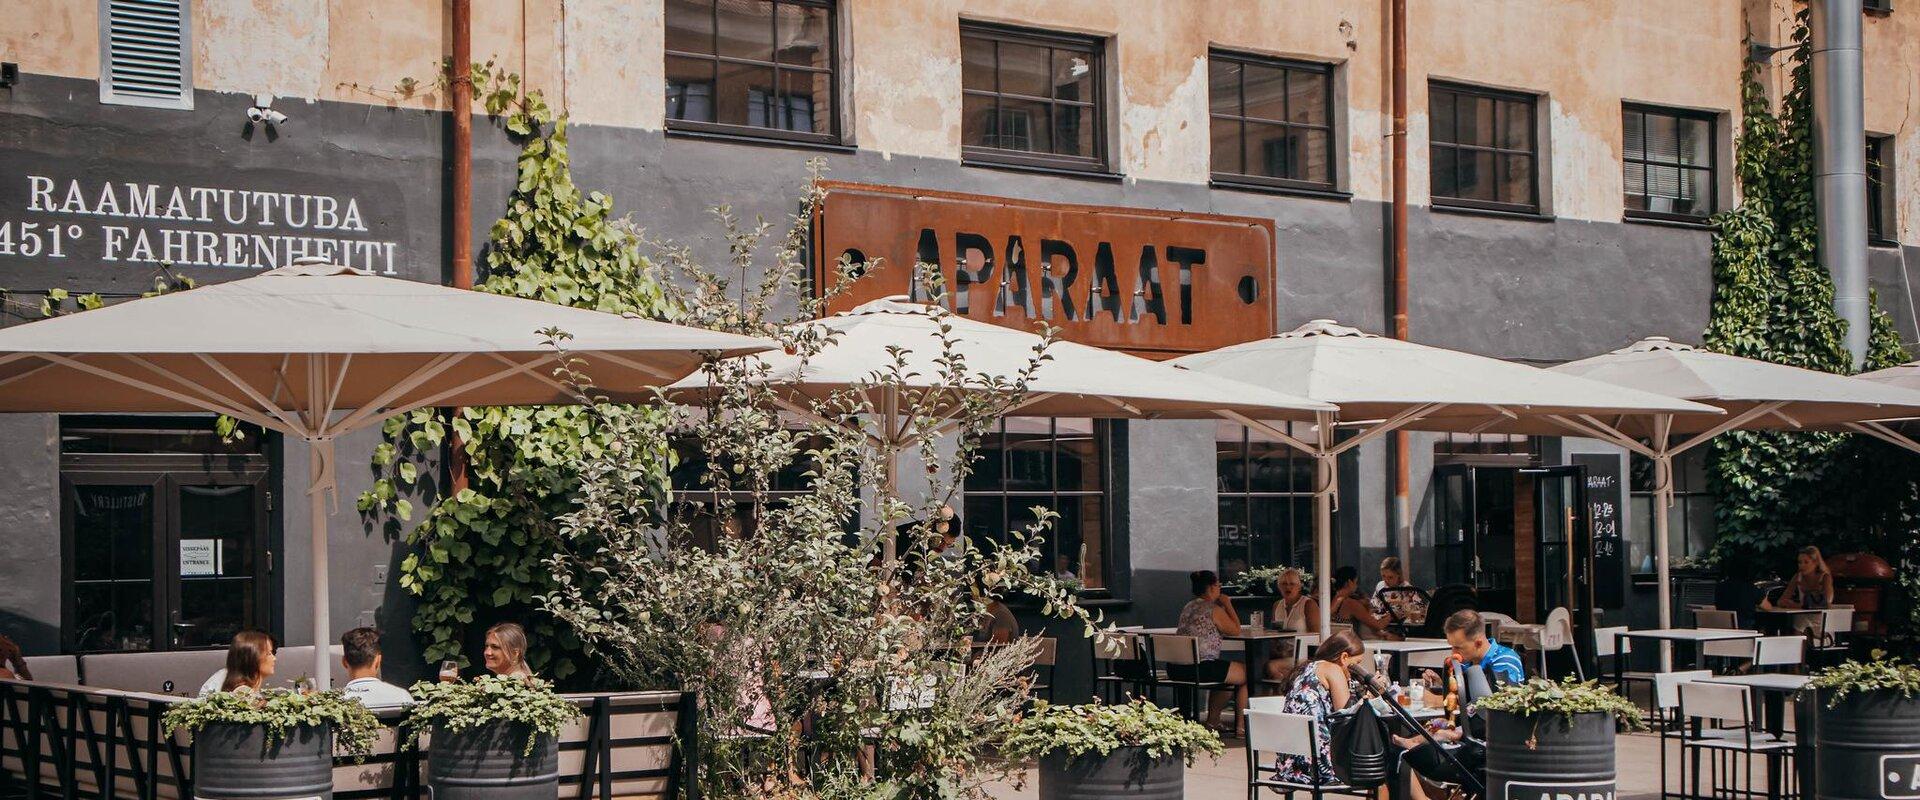 Restaurant Aparaat ist ein Ort, wo man sich stets über Ihren Besuch freut. Immer werden Sie hier auch Bekannte vorfinden. Leckere Gerichte und Getränk